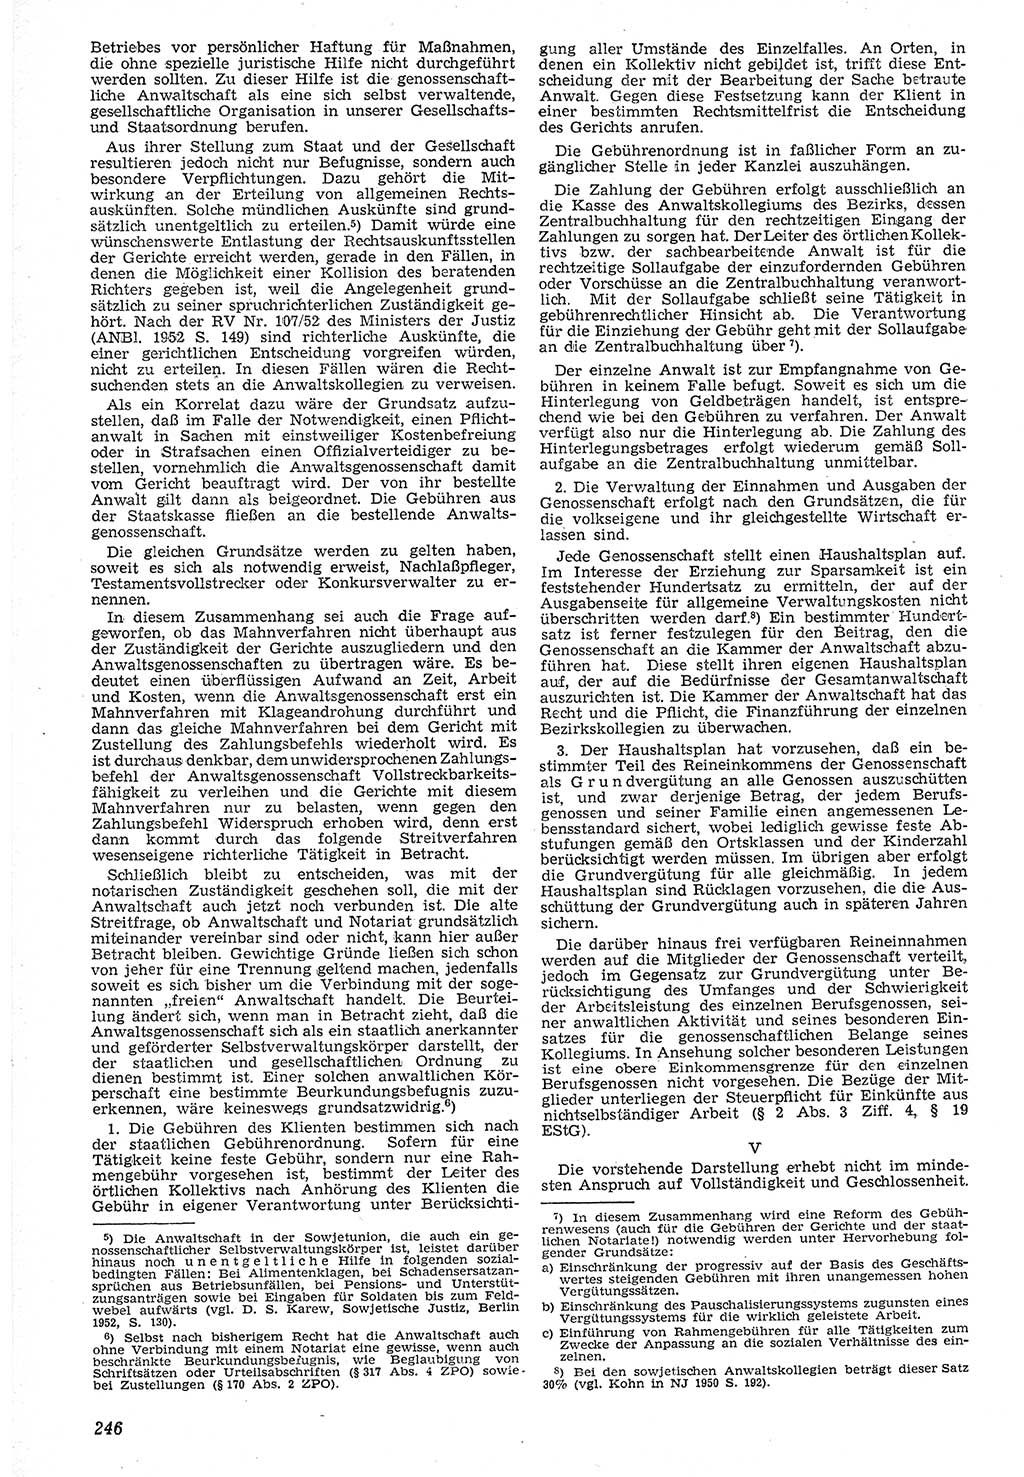 Neue Justiz (NJ), Zeitschrift für Recht und Rechtswissenschaft [Deutsche Demokratische Republik (DDR)], 7. Jahrgang 1953, Seite 246 (NJ DDR 1953, S. 246)